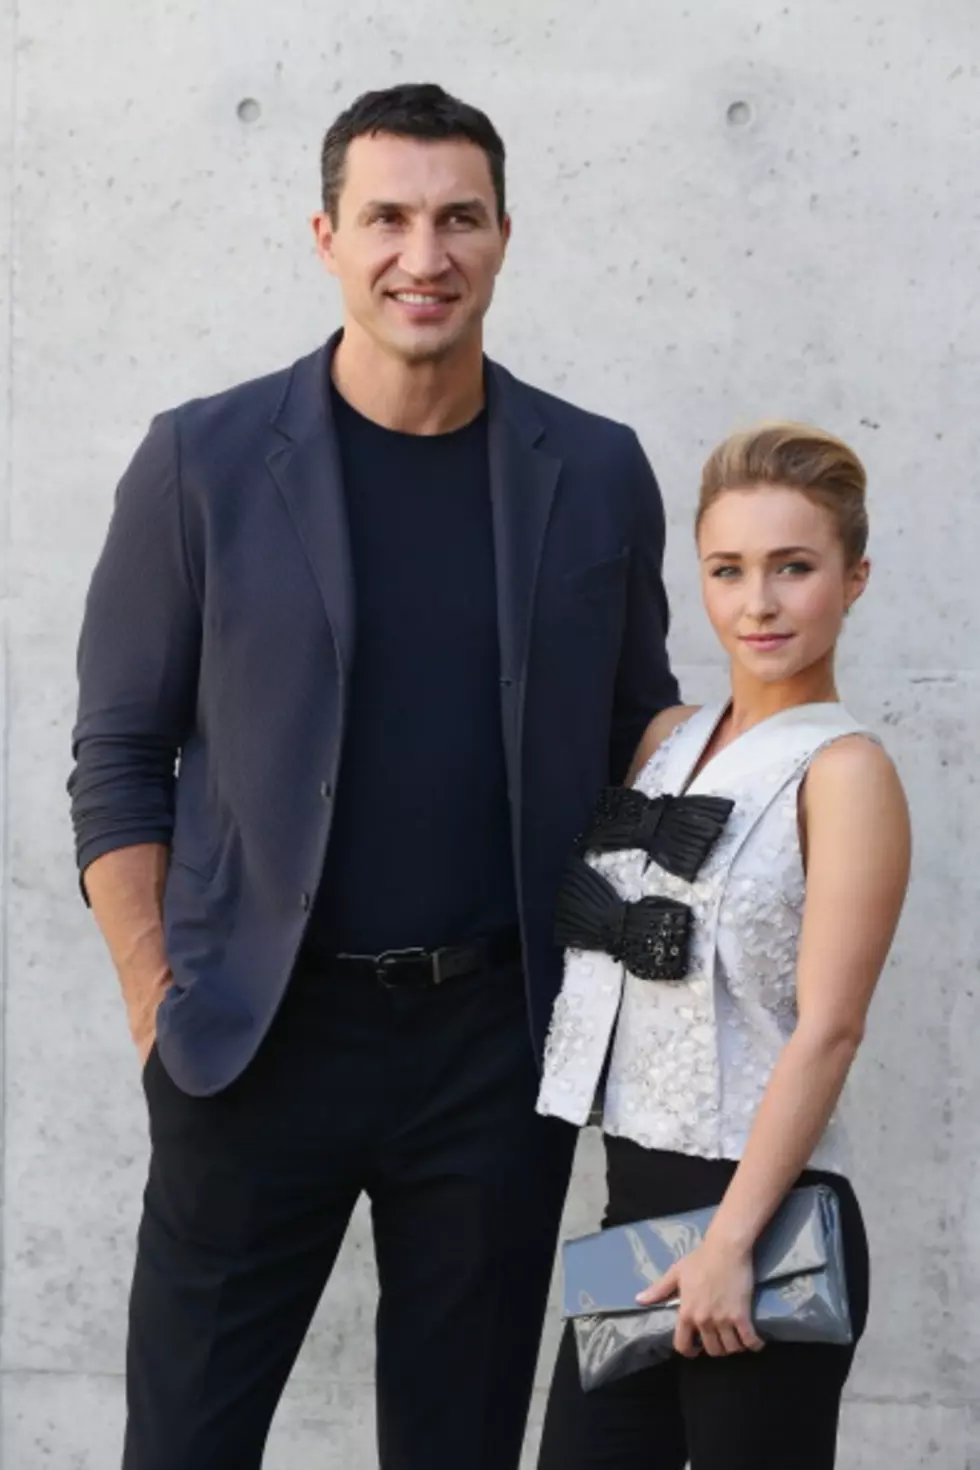 Hayden Panettiere Engaged To Wladimir Klitschko